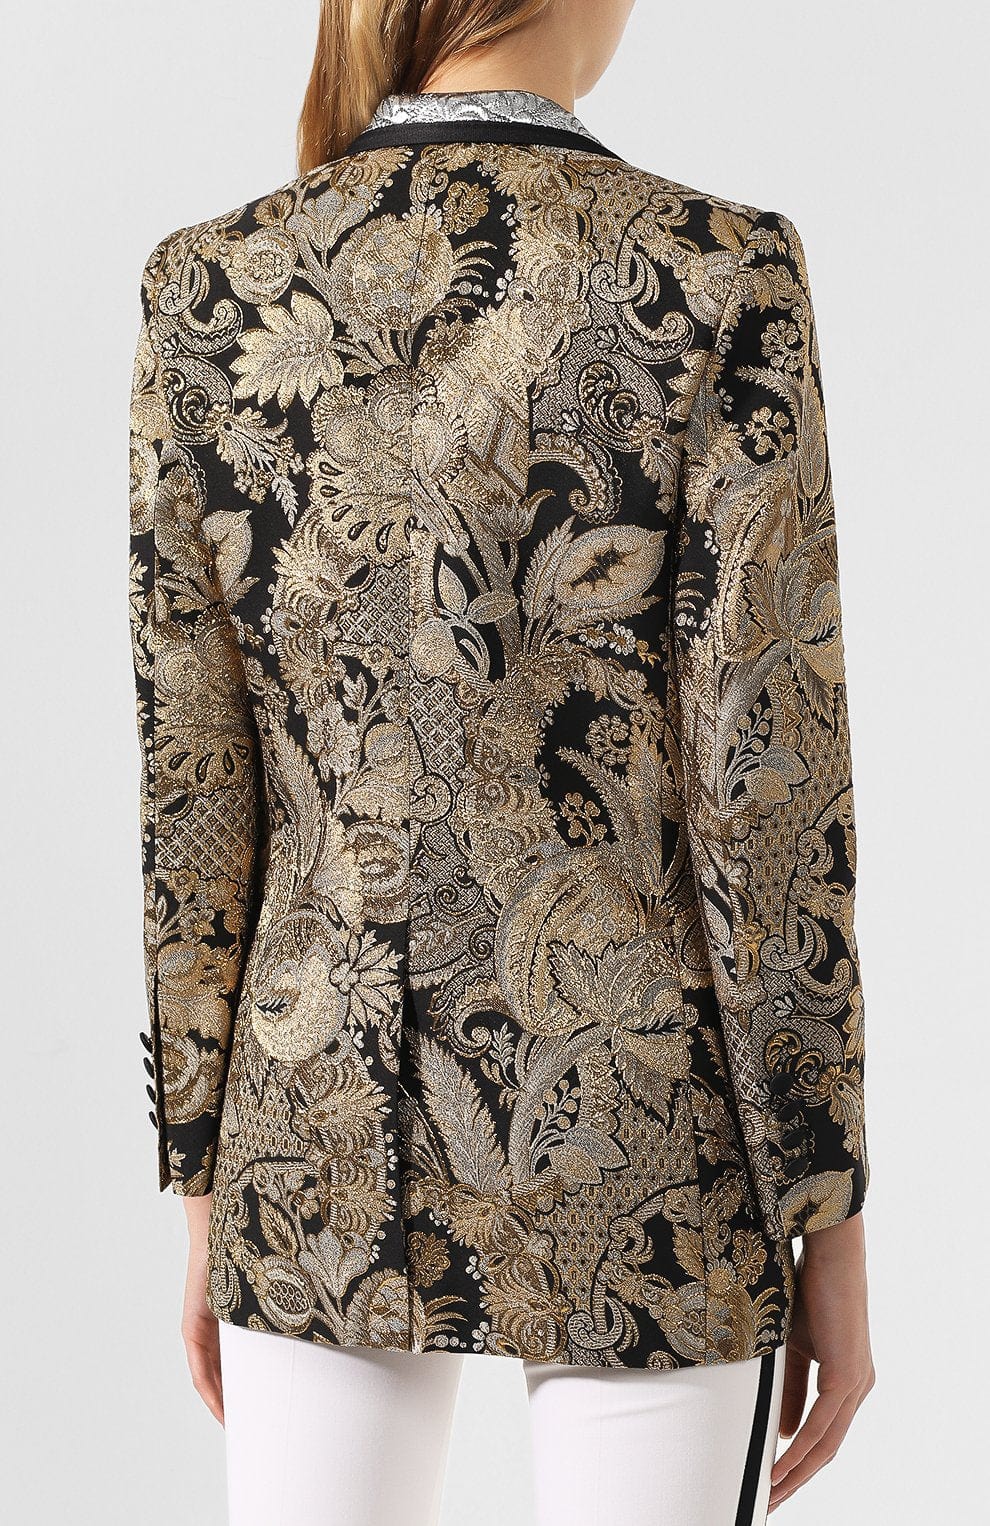 Dolce & Gabbana Jacquard Silk Blazer